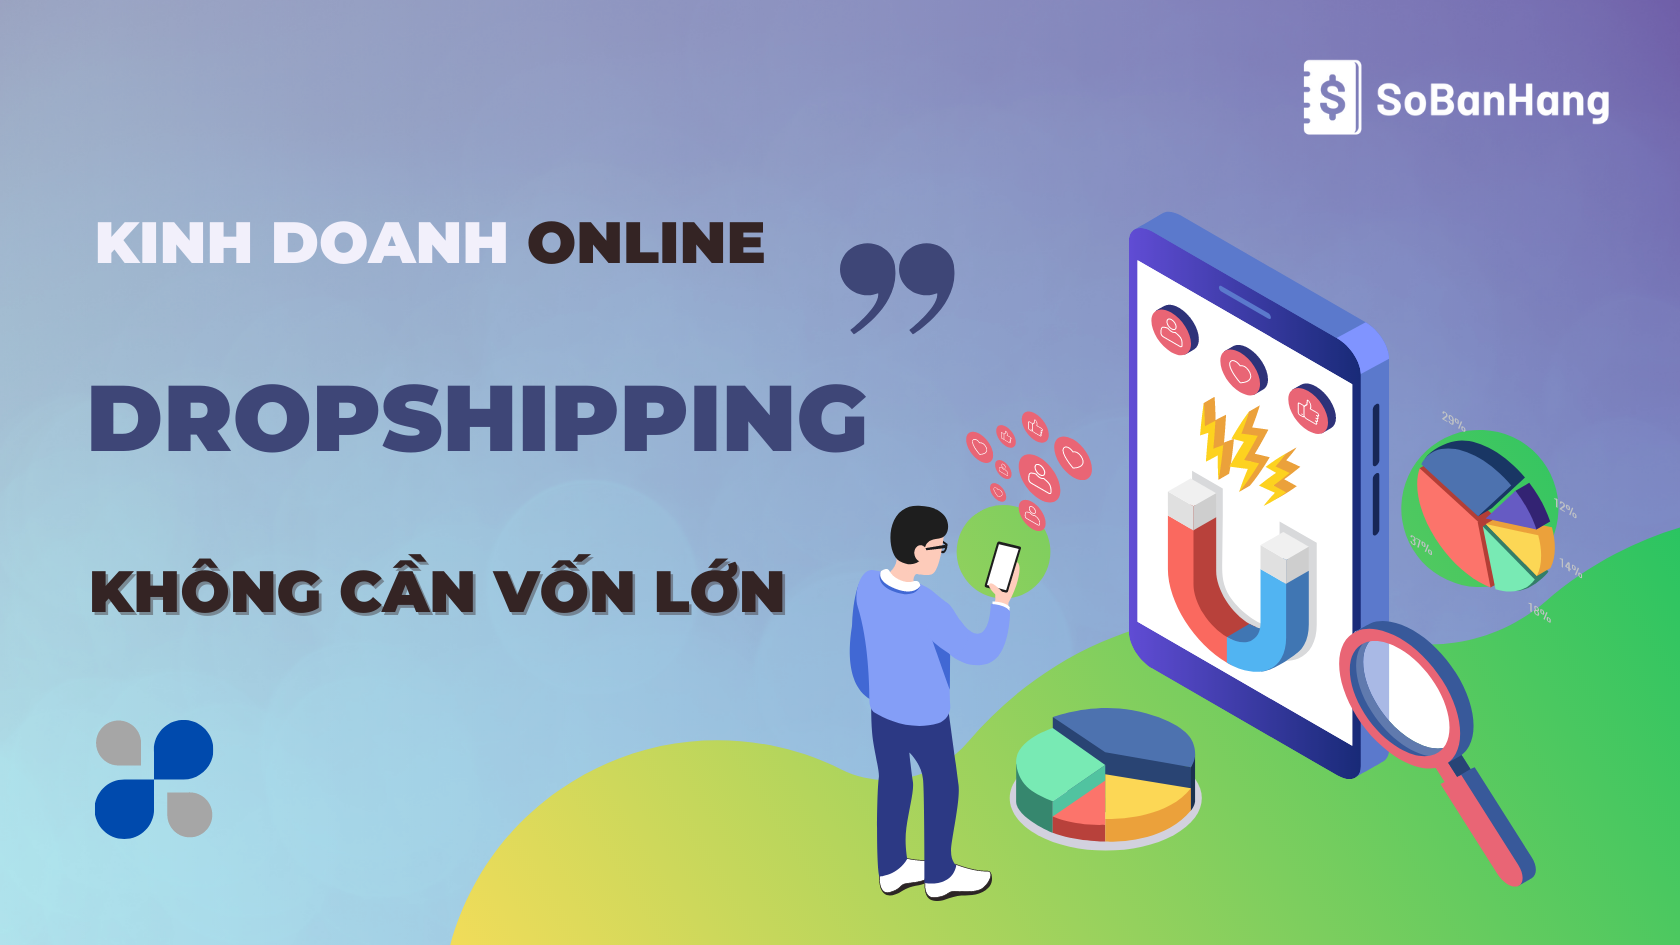 Dropshipping - Kinh doanh online không cần vốn lớn